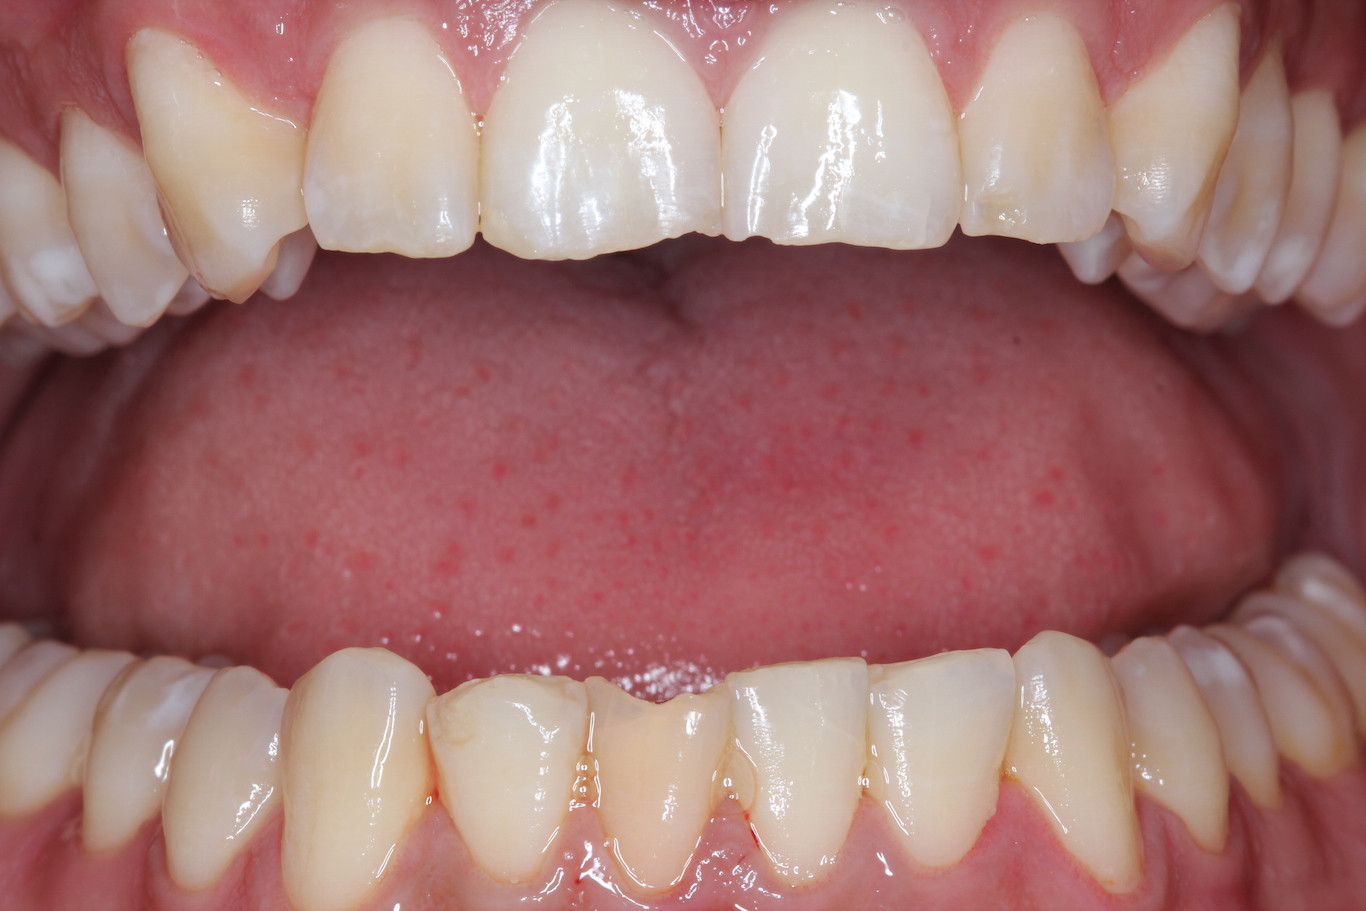 pinhole procedure for receding gums